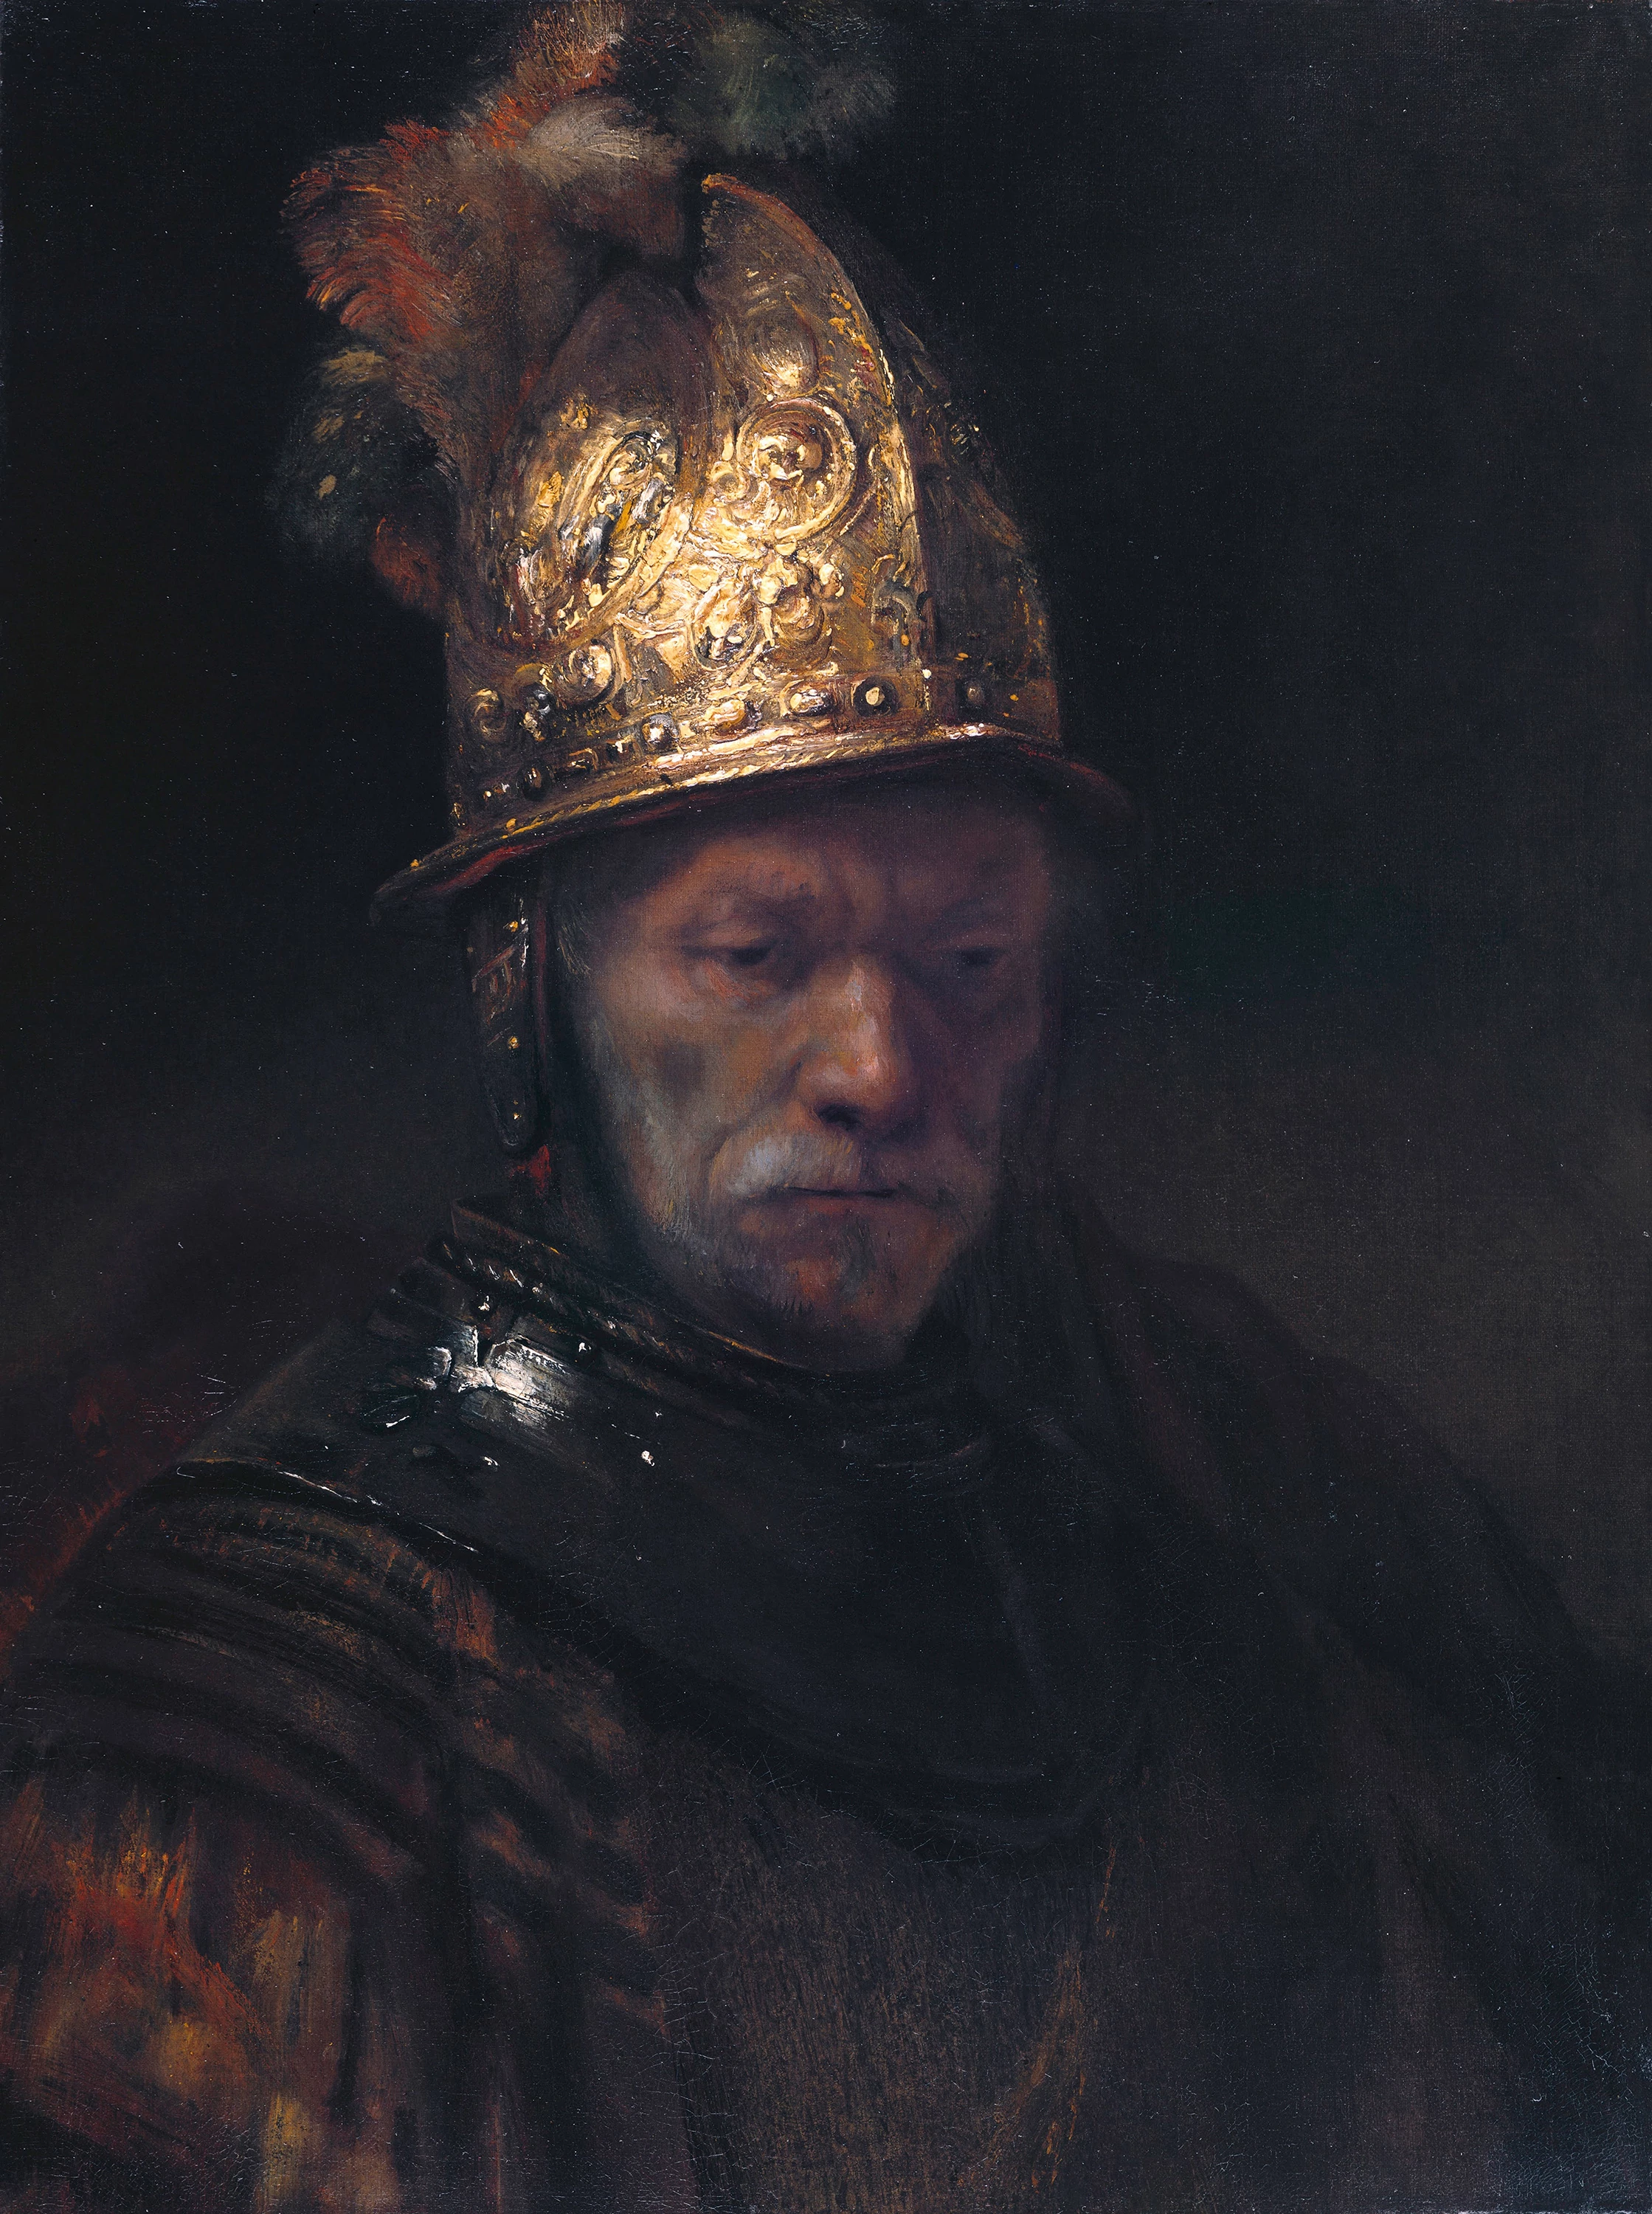 The Man with the Golden Helmet, Rembrandt van Rijn